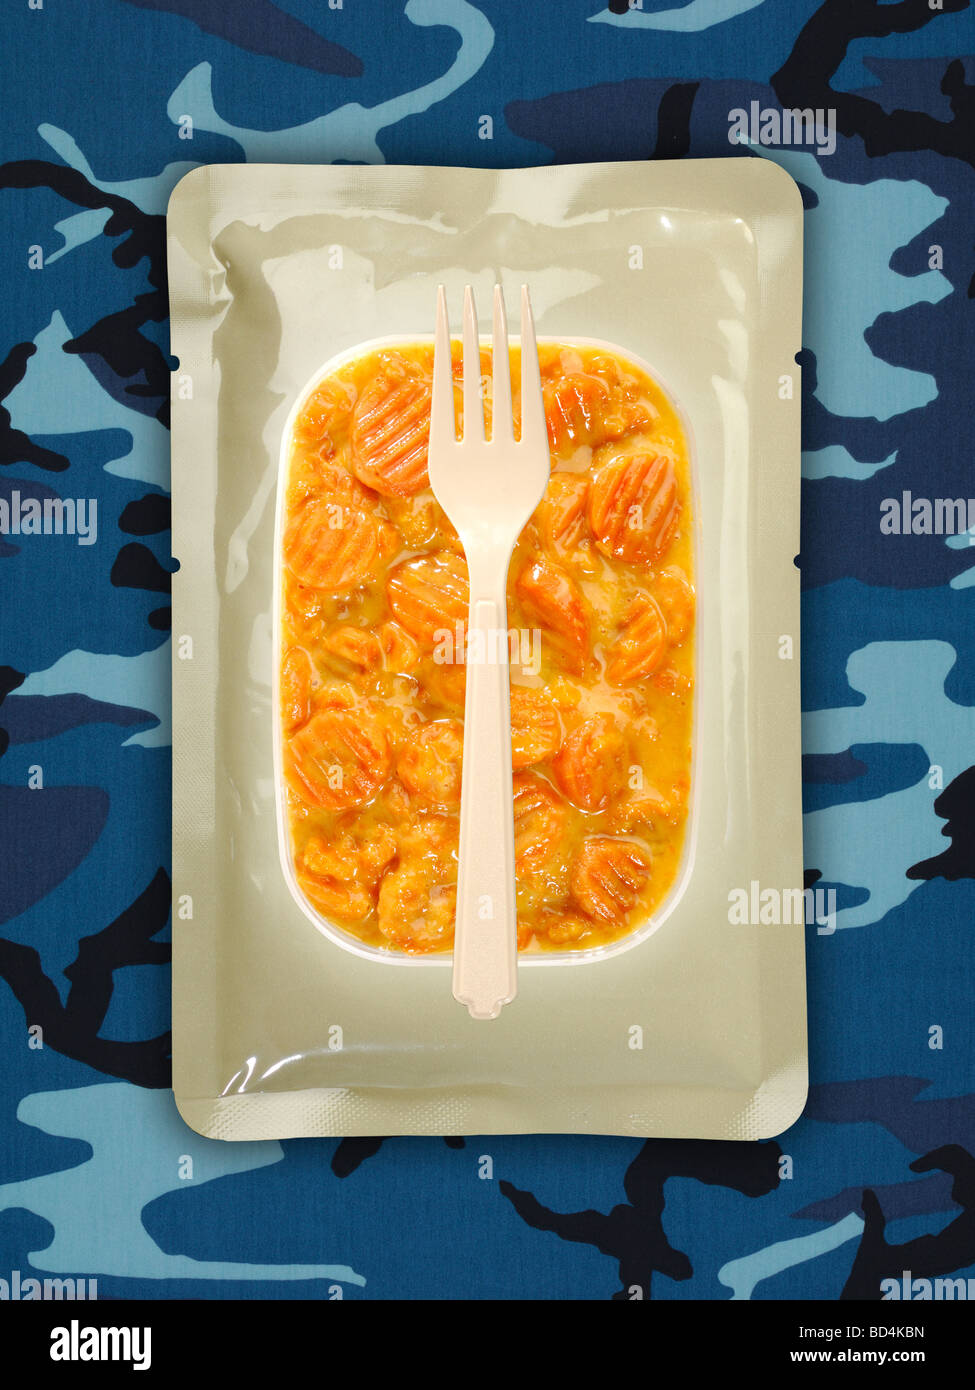 Un militare di razione di cibo pacchetto con una forcella su uno sfondo di colore blu camouflage, le carote affettate in salsa Foto Stock